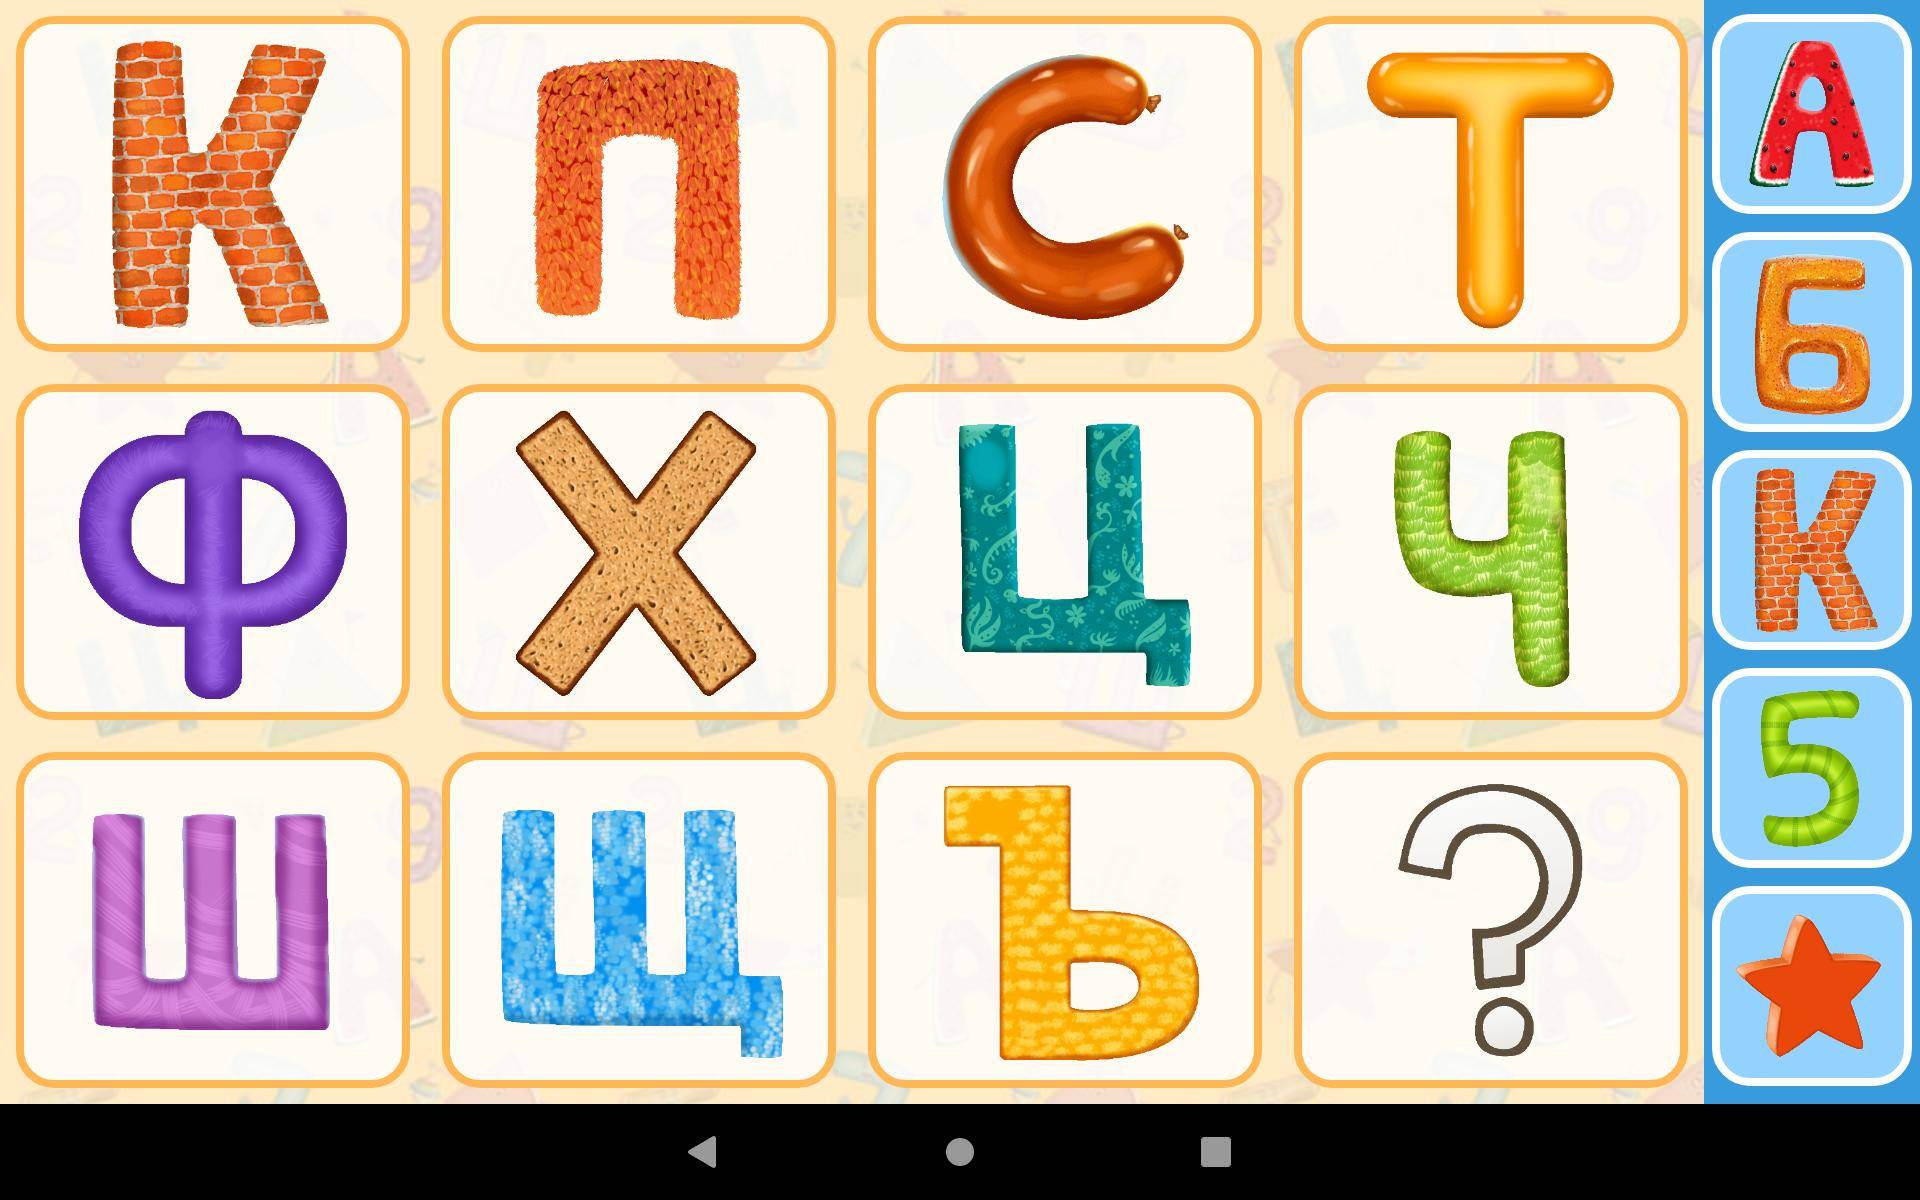 Развивающий игры детям 3-6 лет для изучения алфавита